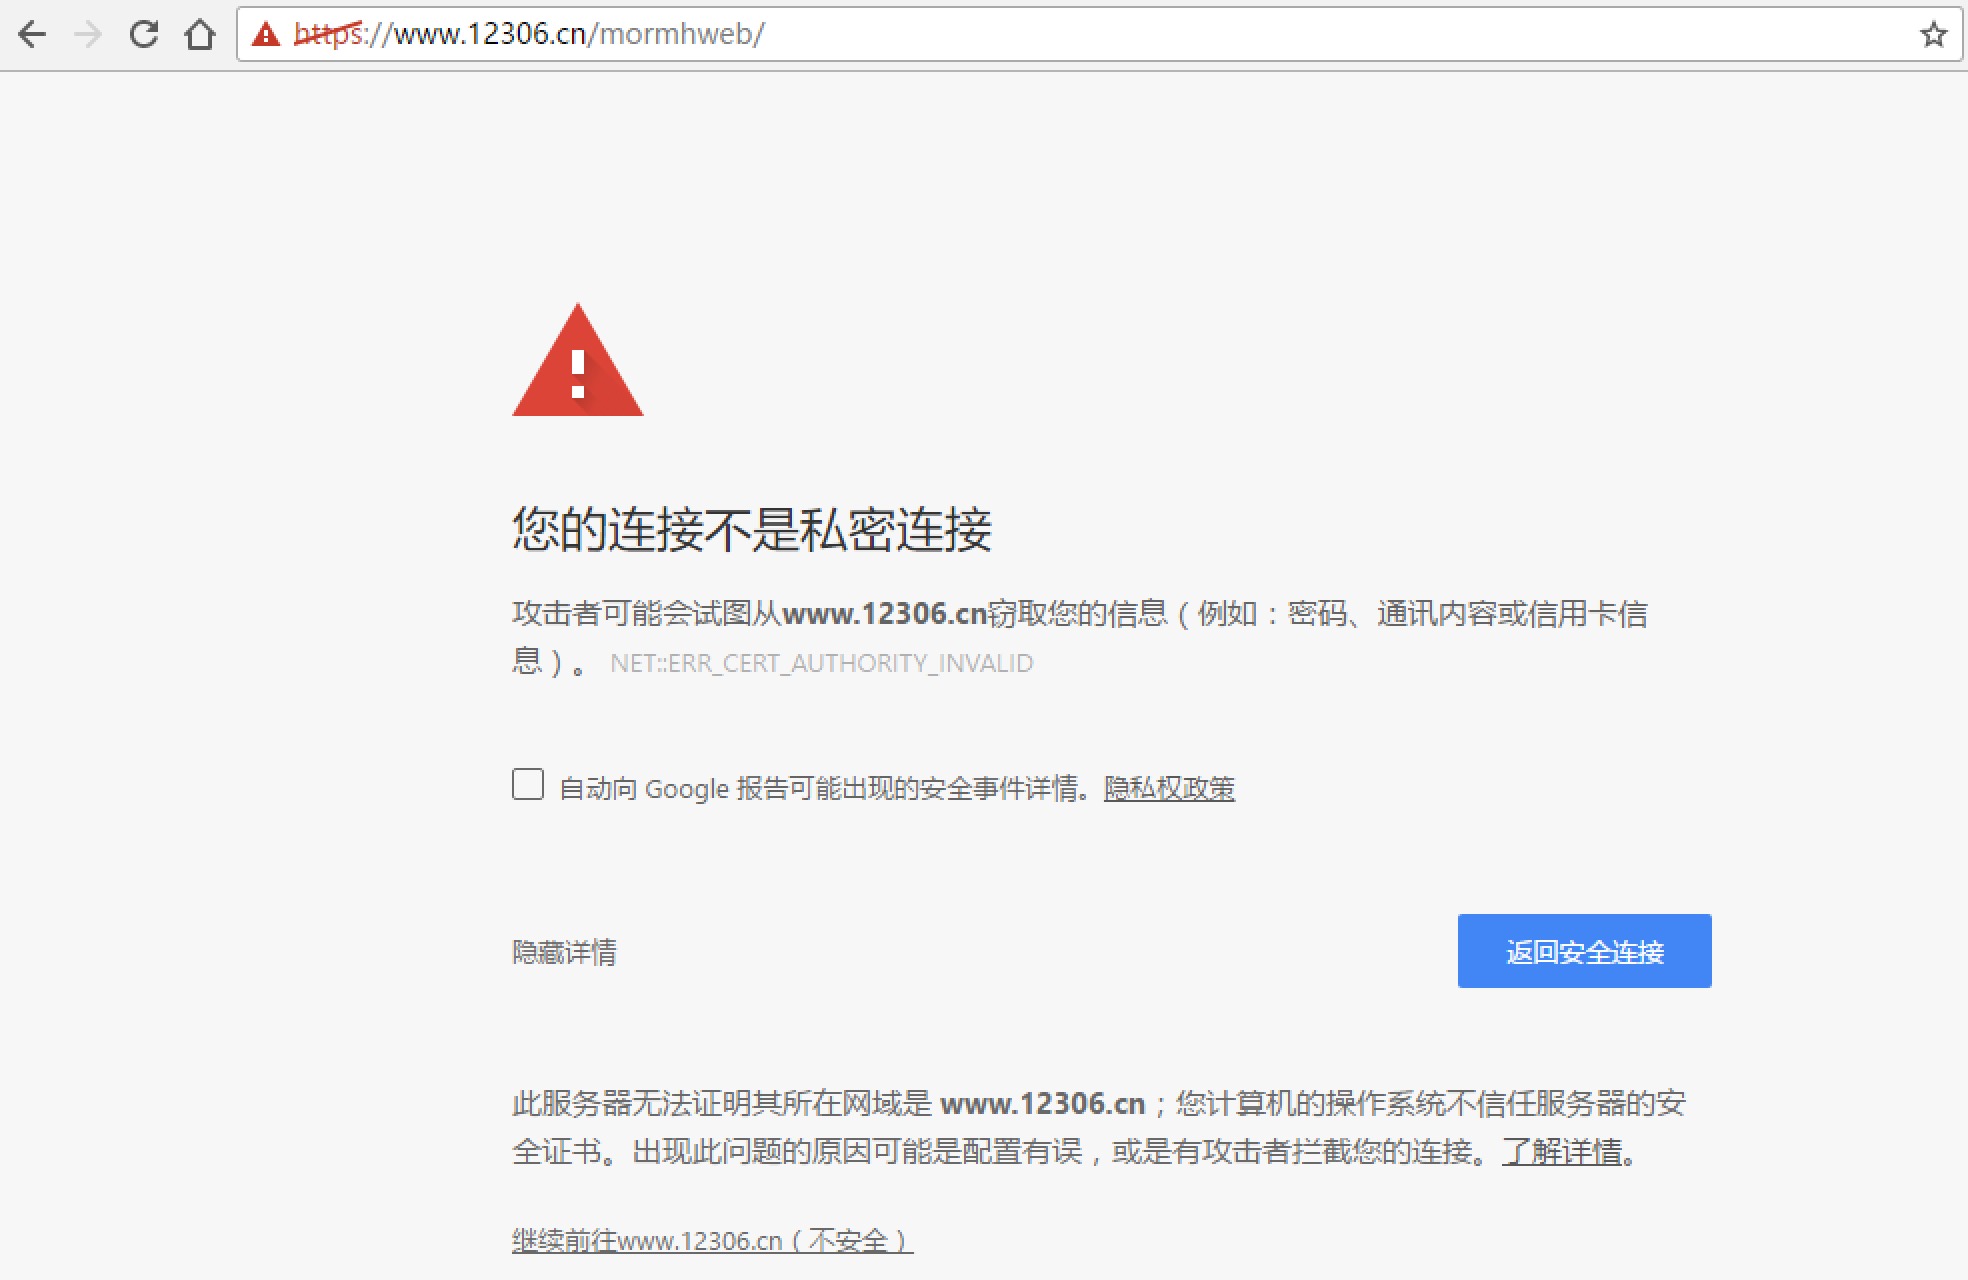 python：urllib2.URLError urlopen error [SSL: CERTIFICATE_VERIFY_FAILED] certificate verify failed